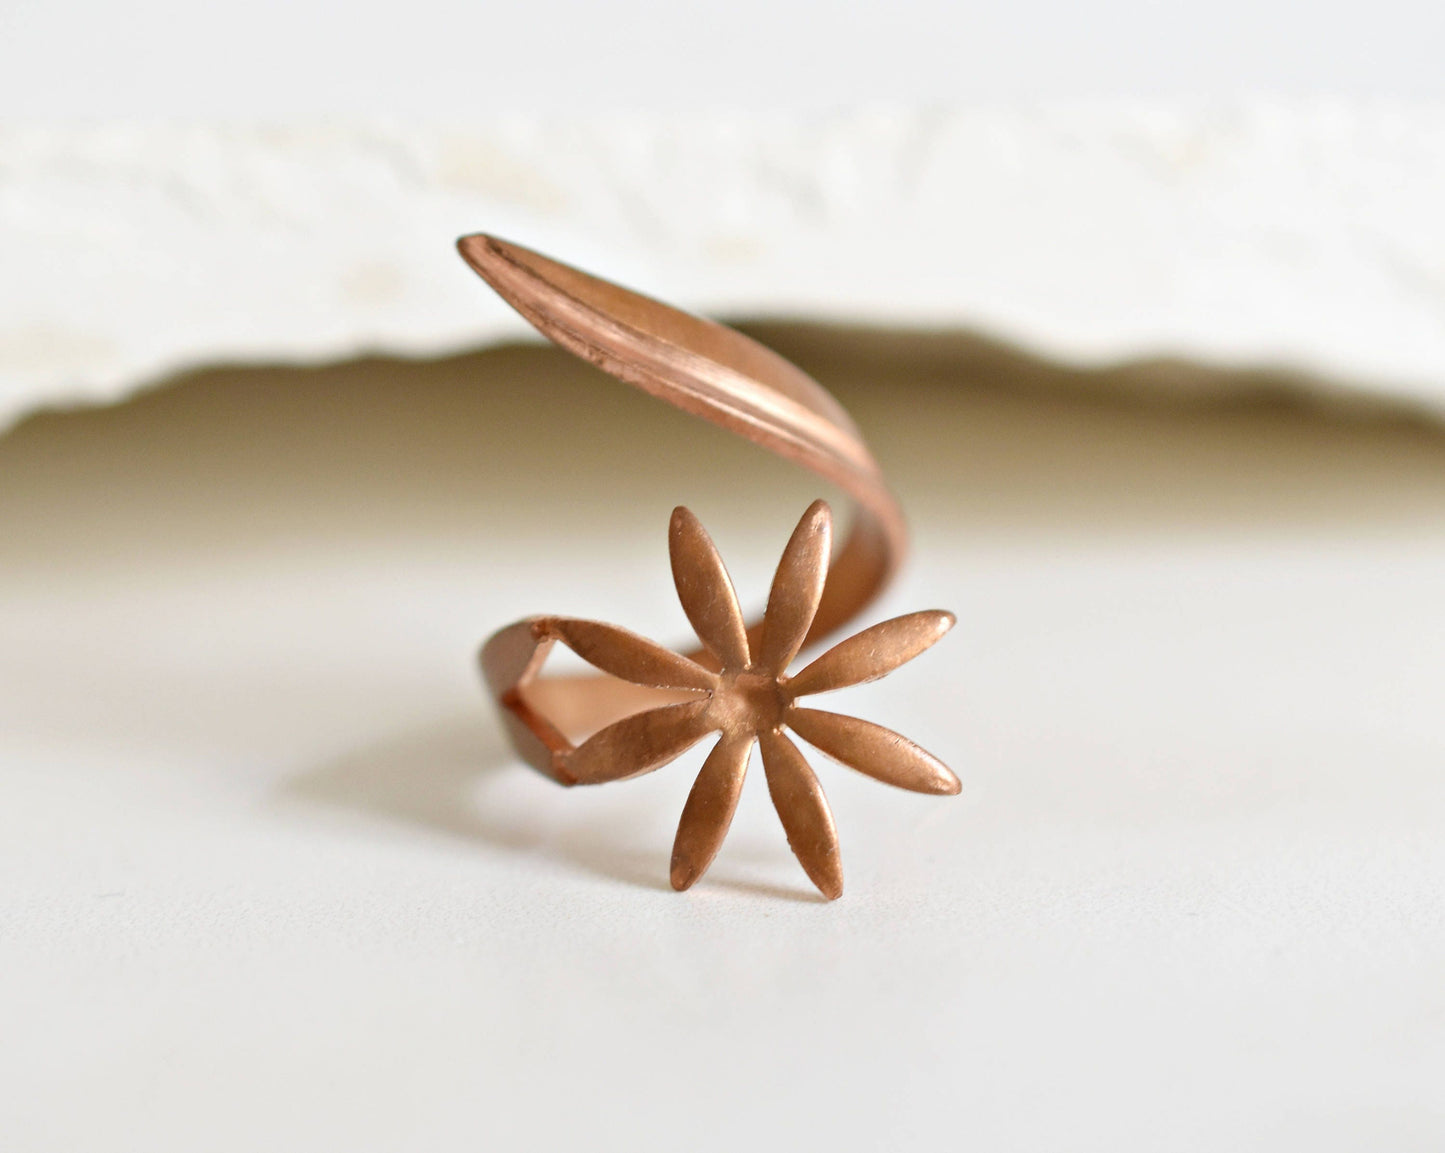 Copper Flower Size Adjustable Ring - Margerite Vintage Inspirer Played Winding Ring - Vinrin-16